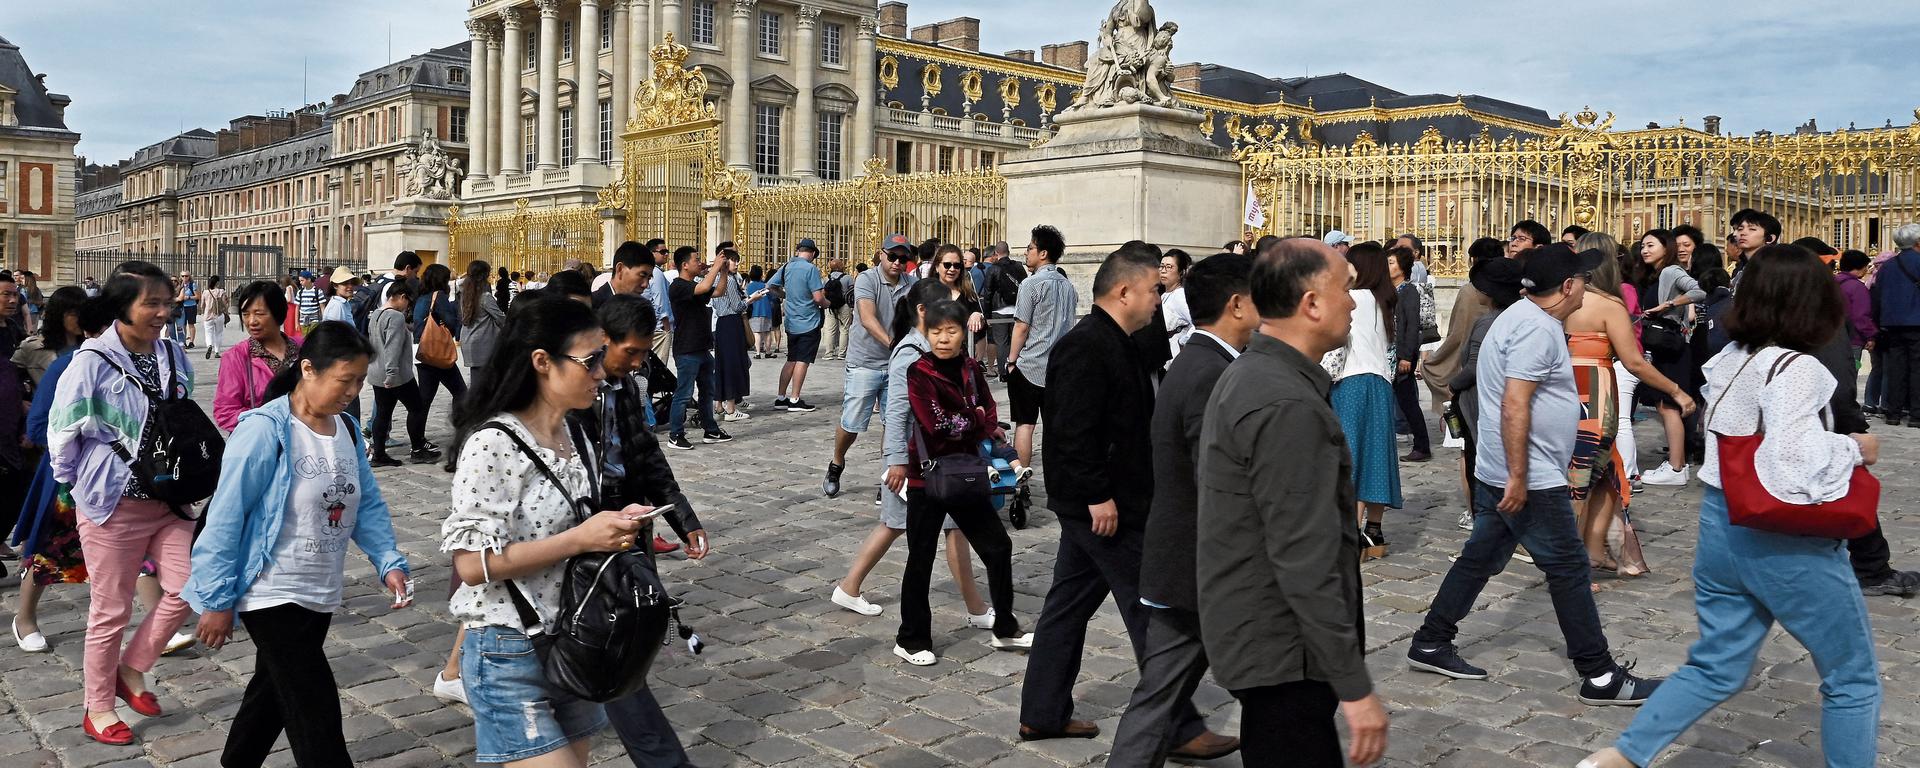 Un verano repleto: los turistas regresan recargados a Europa